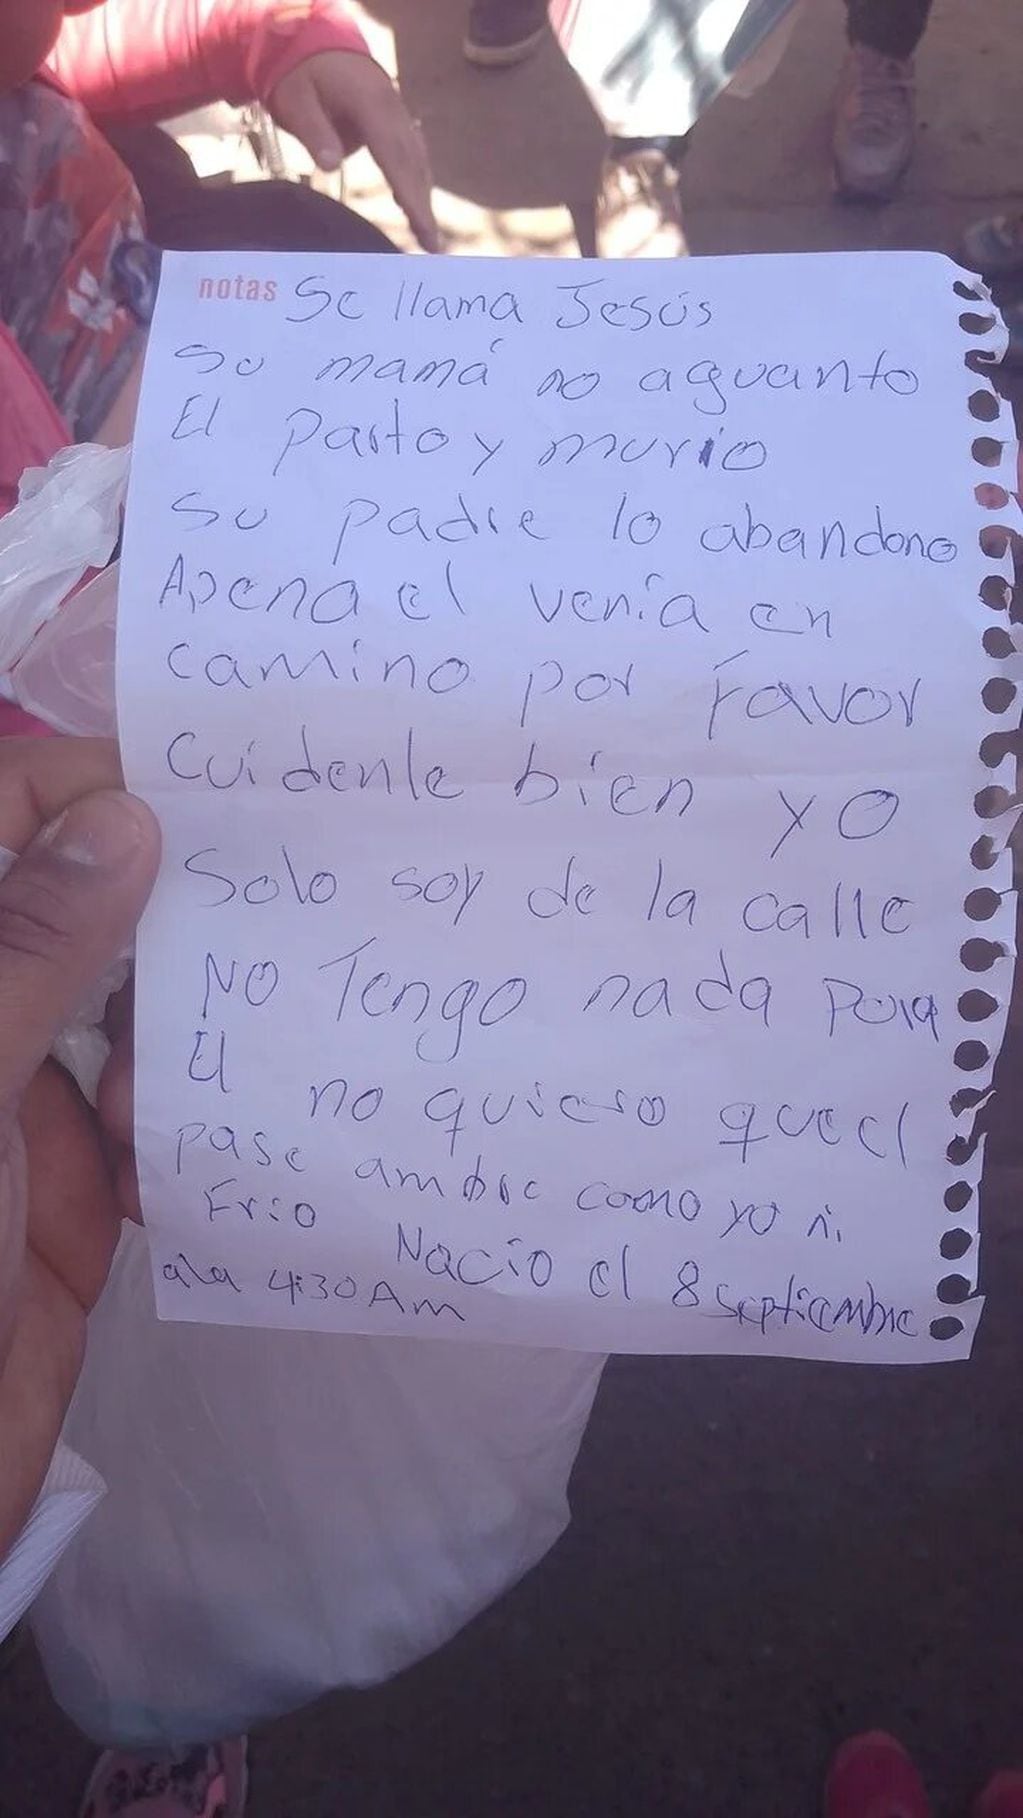 Abandonaron a un bebé recién nacido debajo de un auto y junto a una carta: "Cuídenlo bien, por favor".